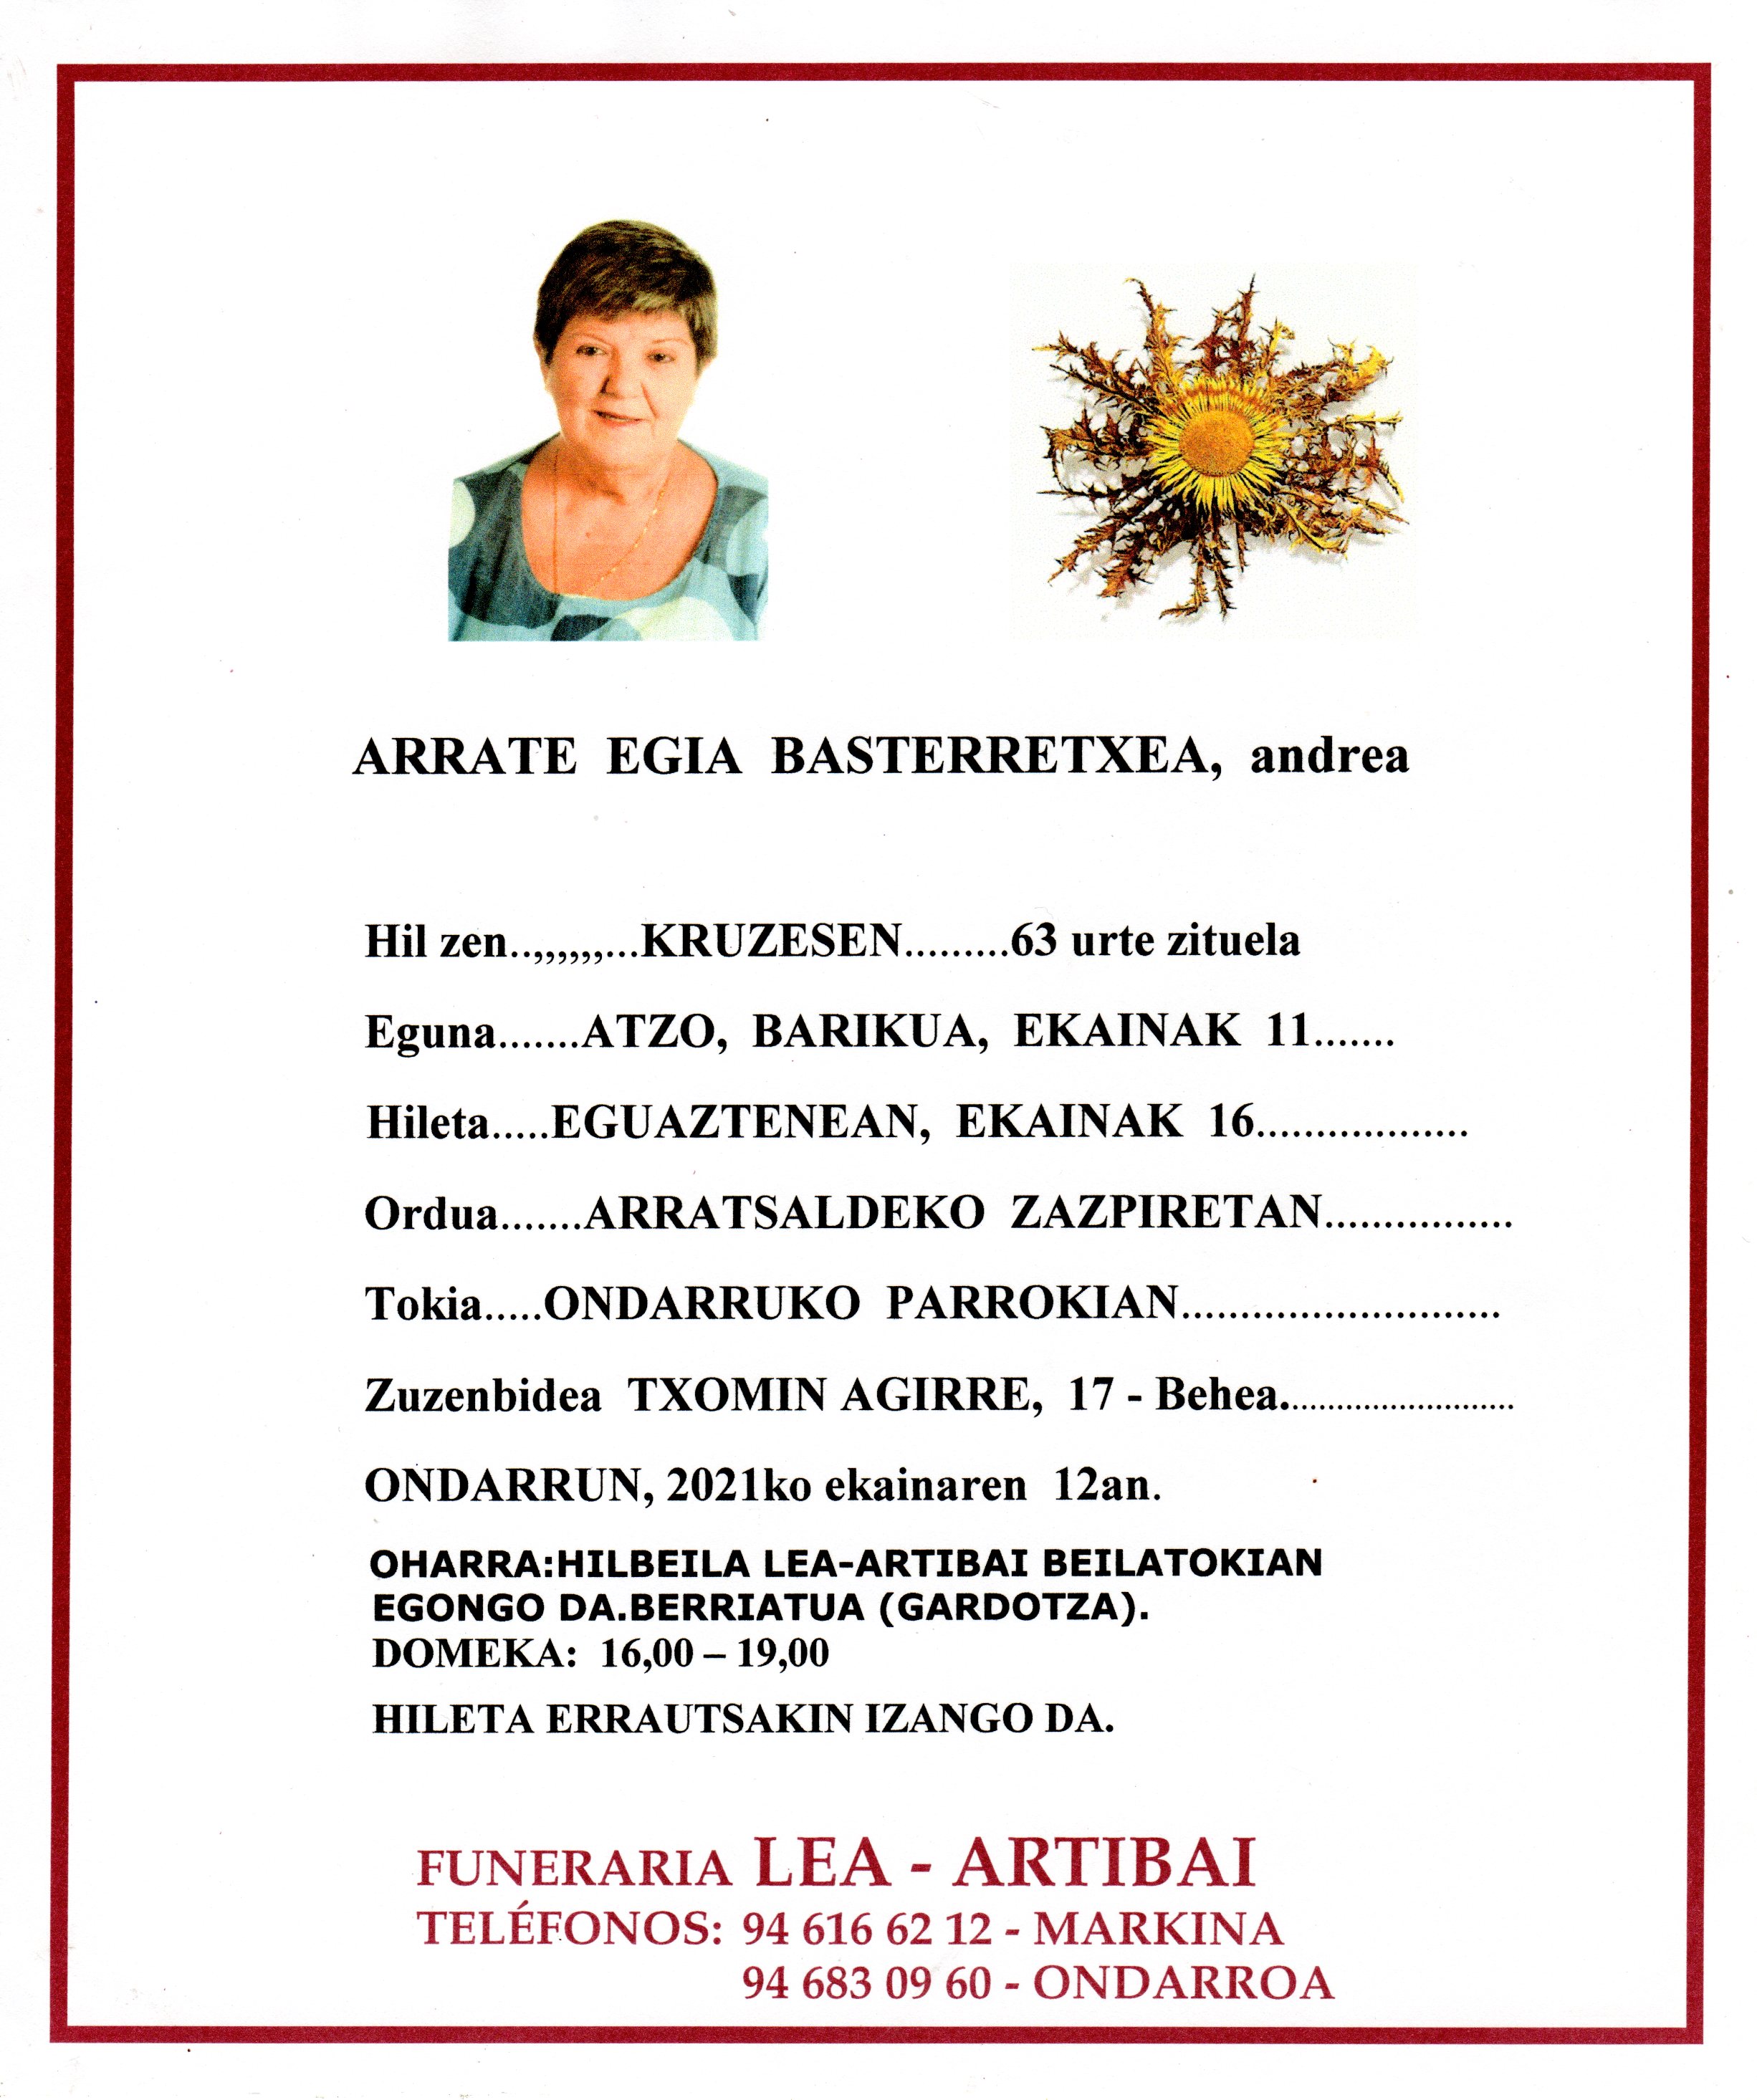 Arrate Egia Basterretxea20210616_10195631